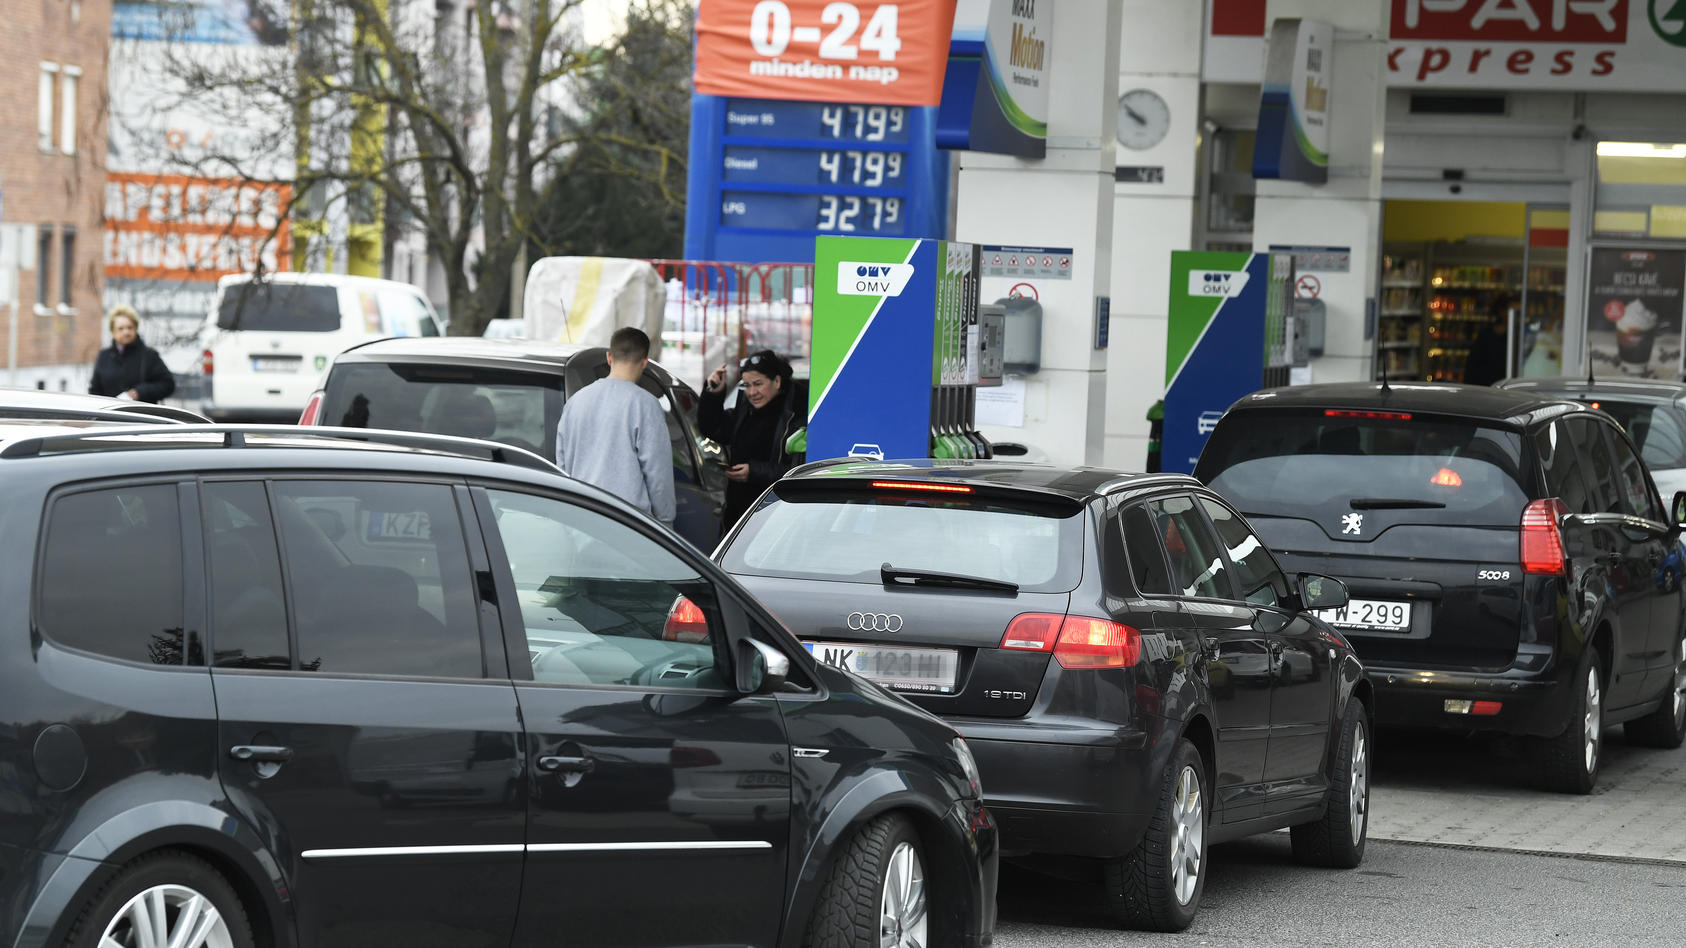 Wartende Fahrzeuge bei einer Tankstelle am Donnerstag, 10. März 2022, in Sopron. Die ungarische Regierung stoppt ab Freitag den sogenannten "Treibstoff-Tourismus". Ab Freitag, 27. Mai 2022, dürfen nur noch Fahrzeuge mit ungarischem Kennzeichen für de